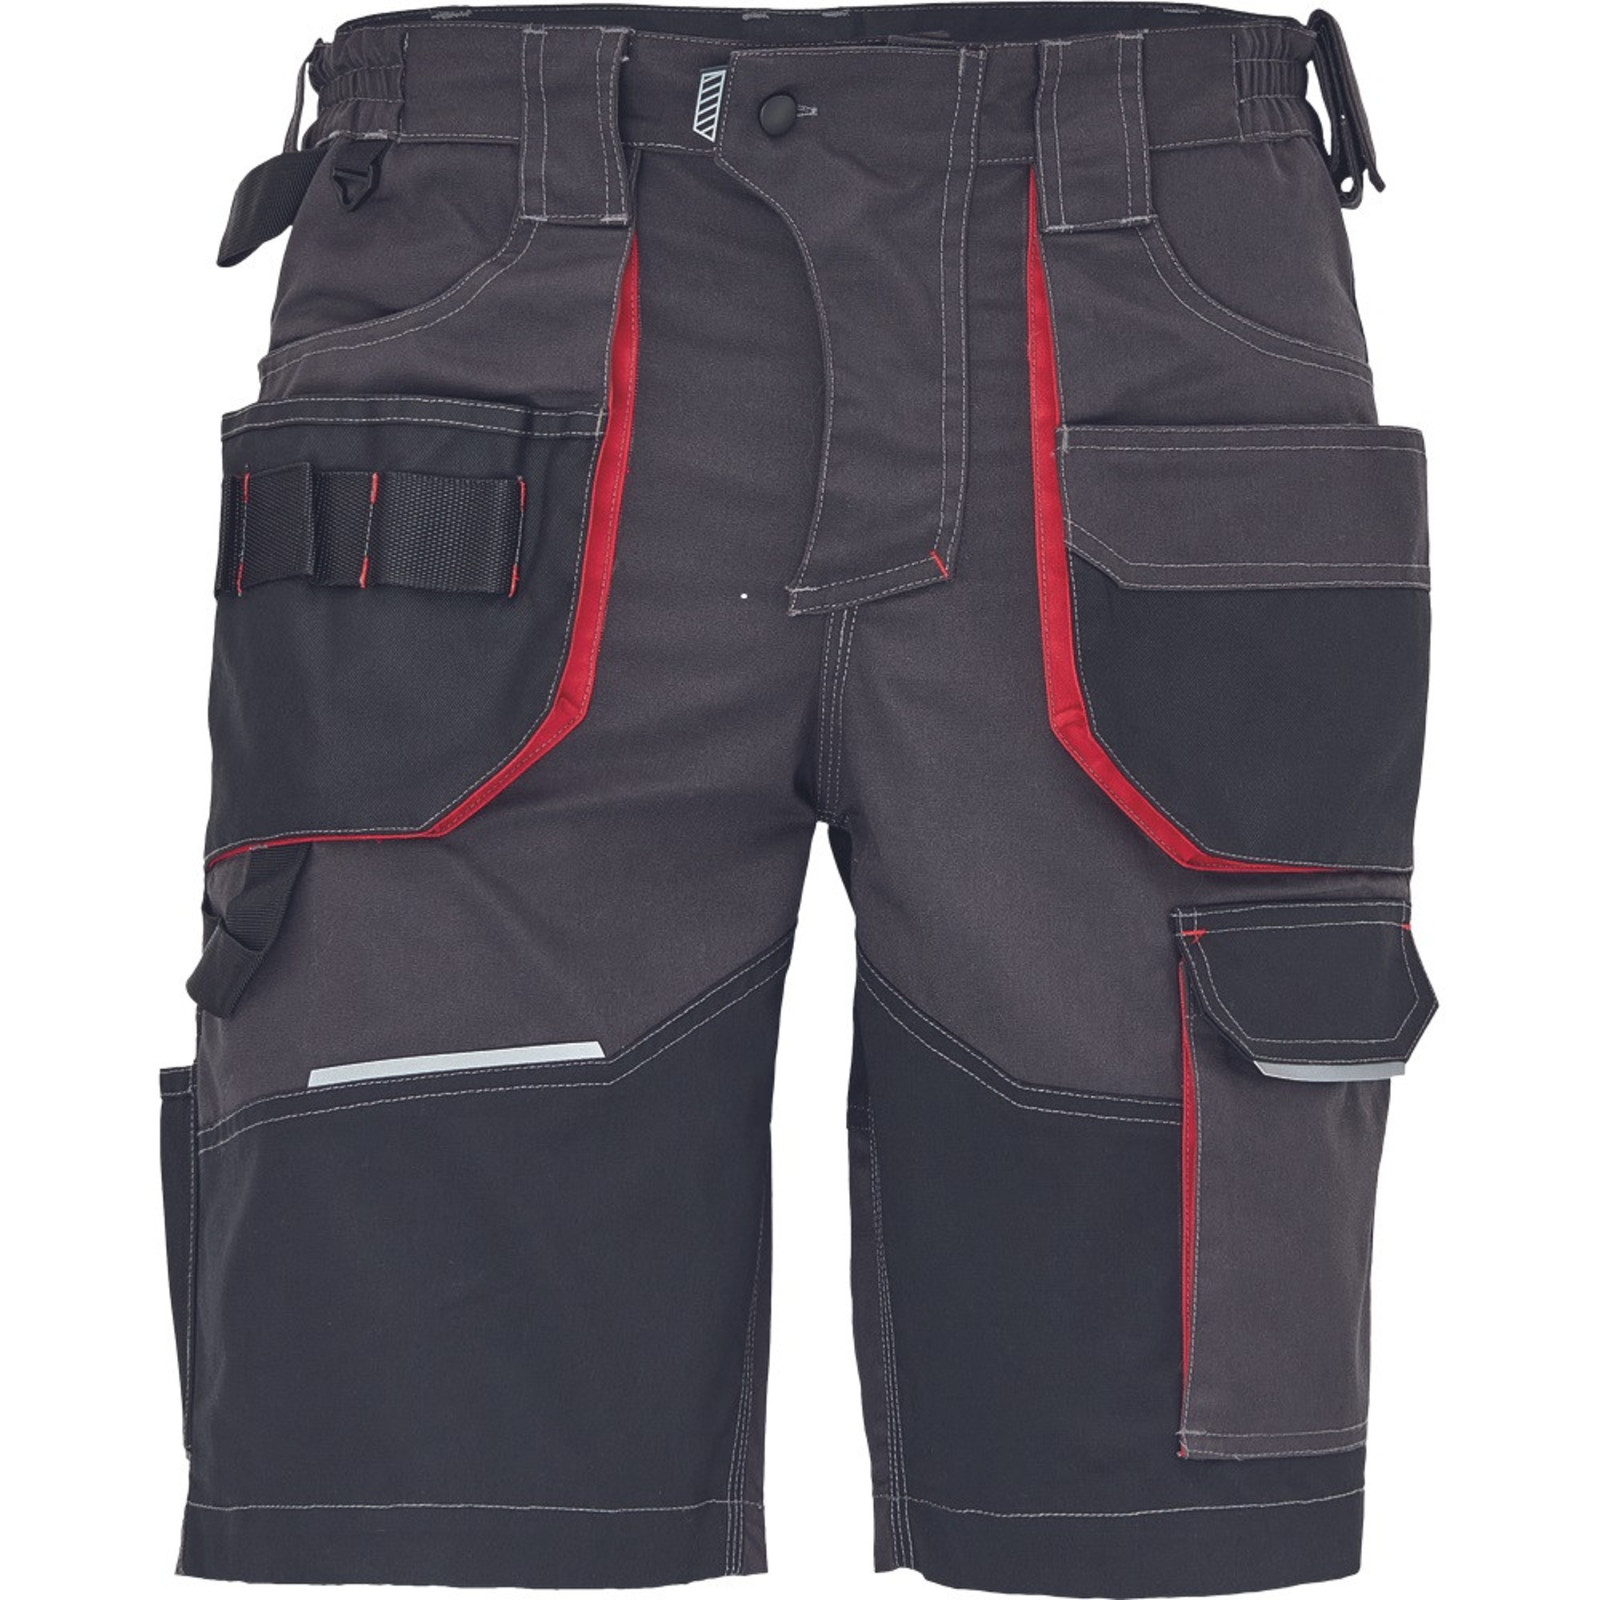 Pánske pracovné šortky SafeWorker Reusel - veľkosť: 60, farba: antracit/červená